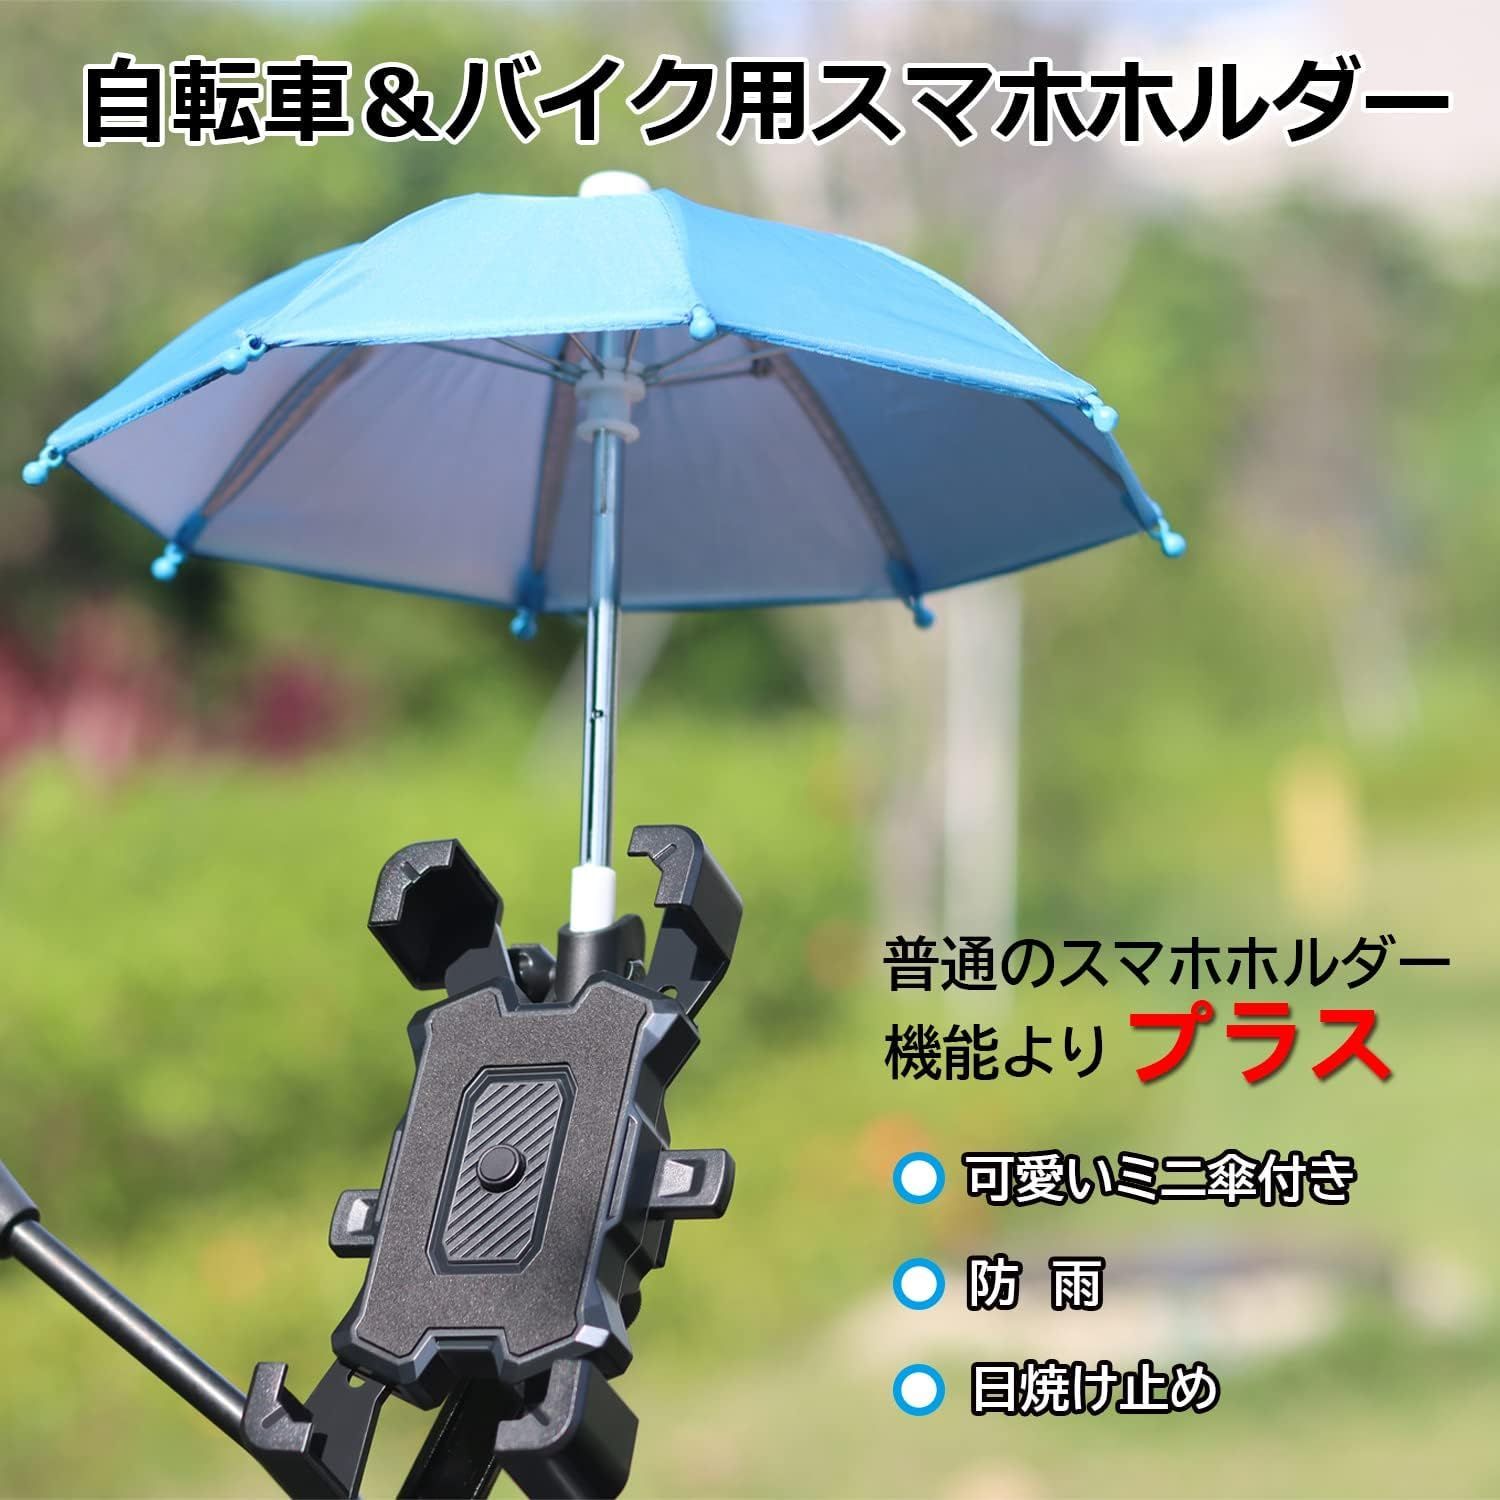 新品 自転車 スマホ ホルダースタンド 可愛い傘付き 防雨 0度回転 脱着簡単 片手操作 自由調節 日本語説明書付き 2254 Flat Baby  メルカリ